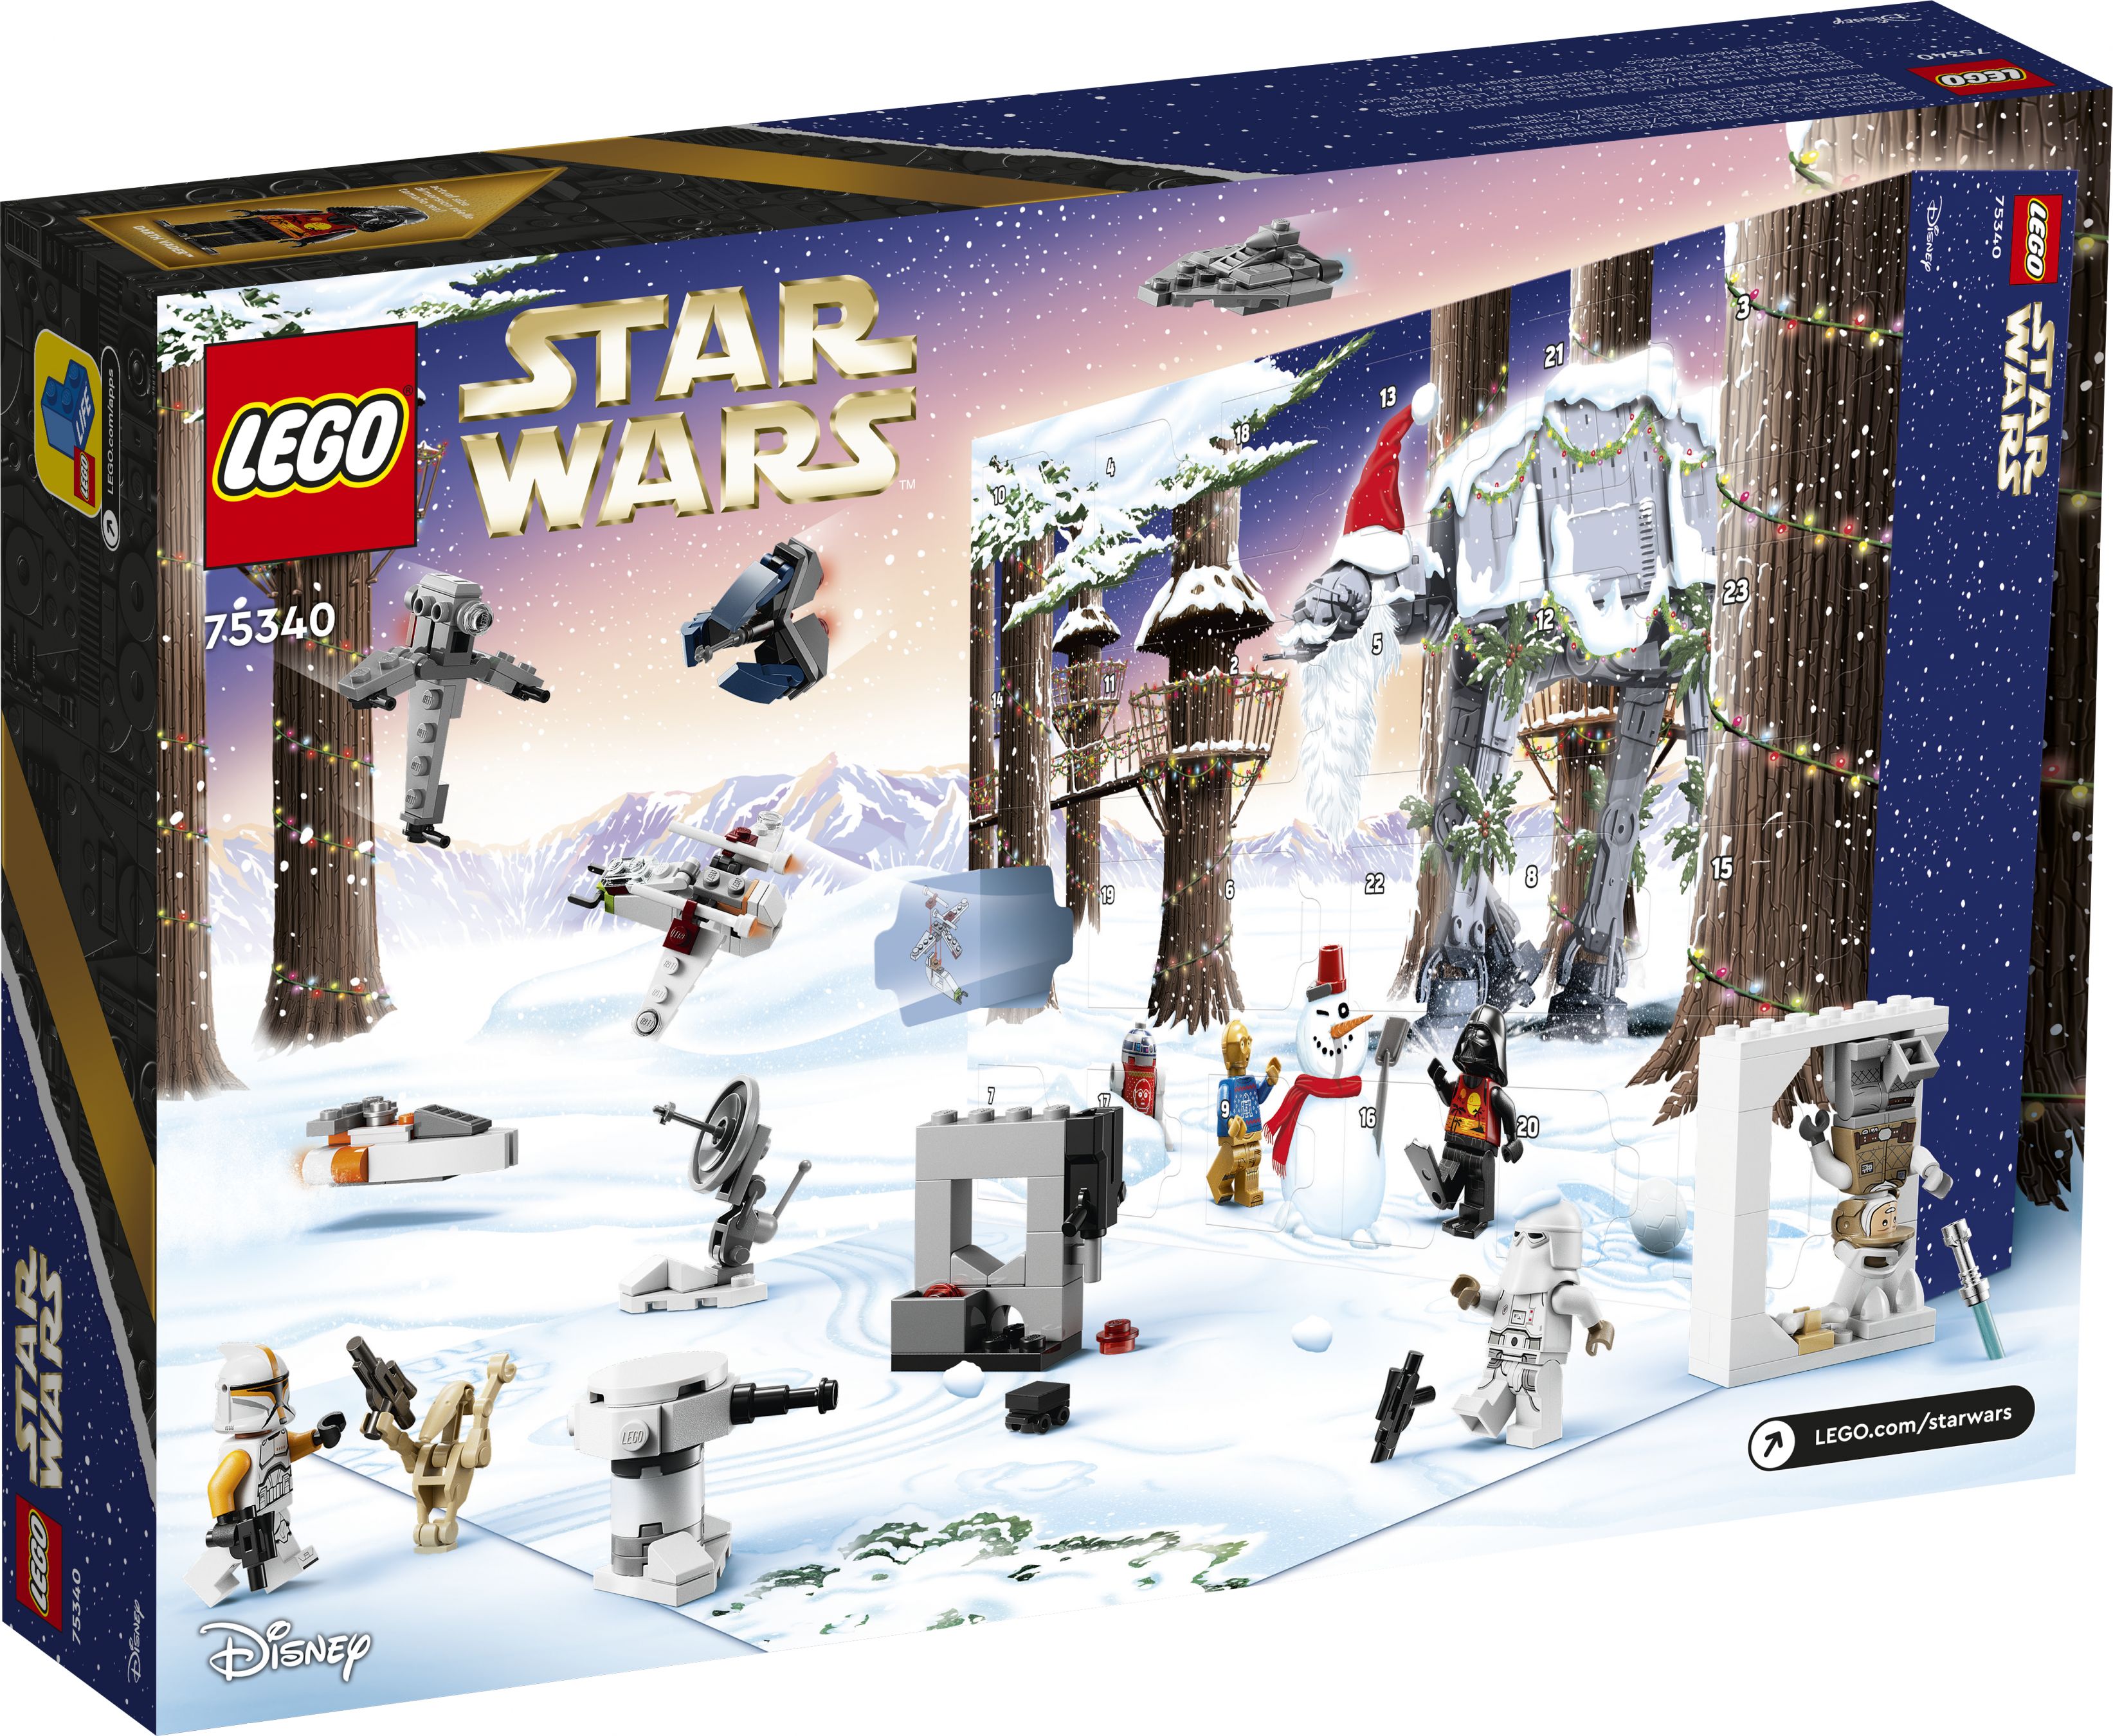 LEGO Star Wars 75340 Adventskalender LEGO_75340_Box5_v39.jpg